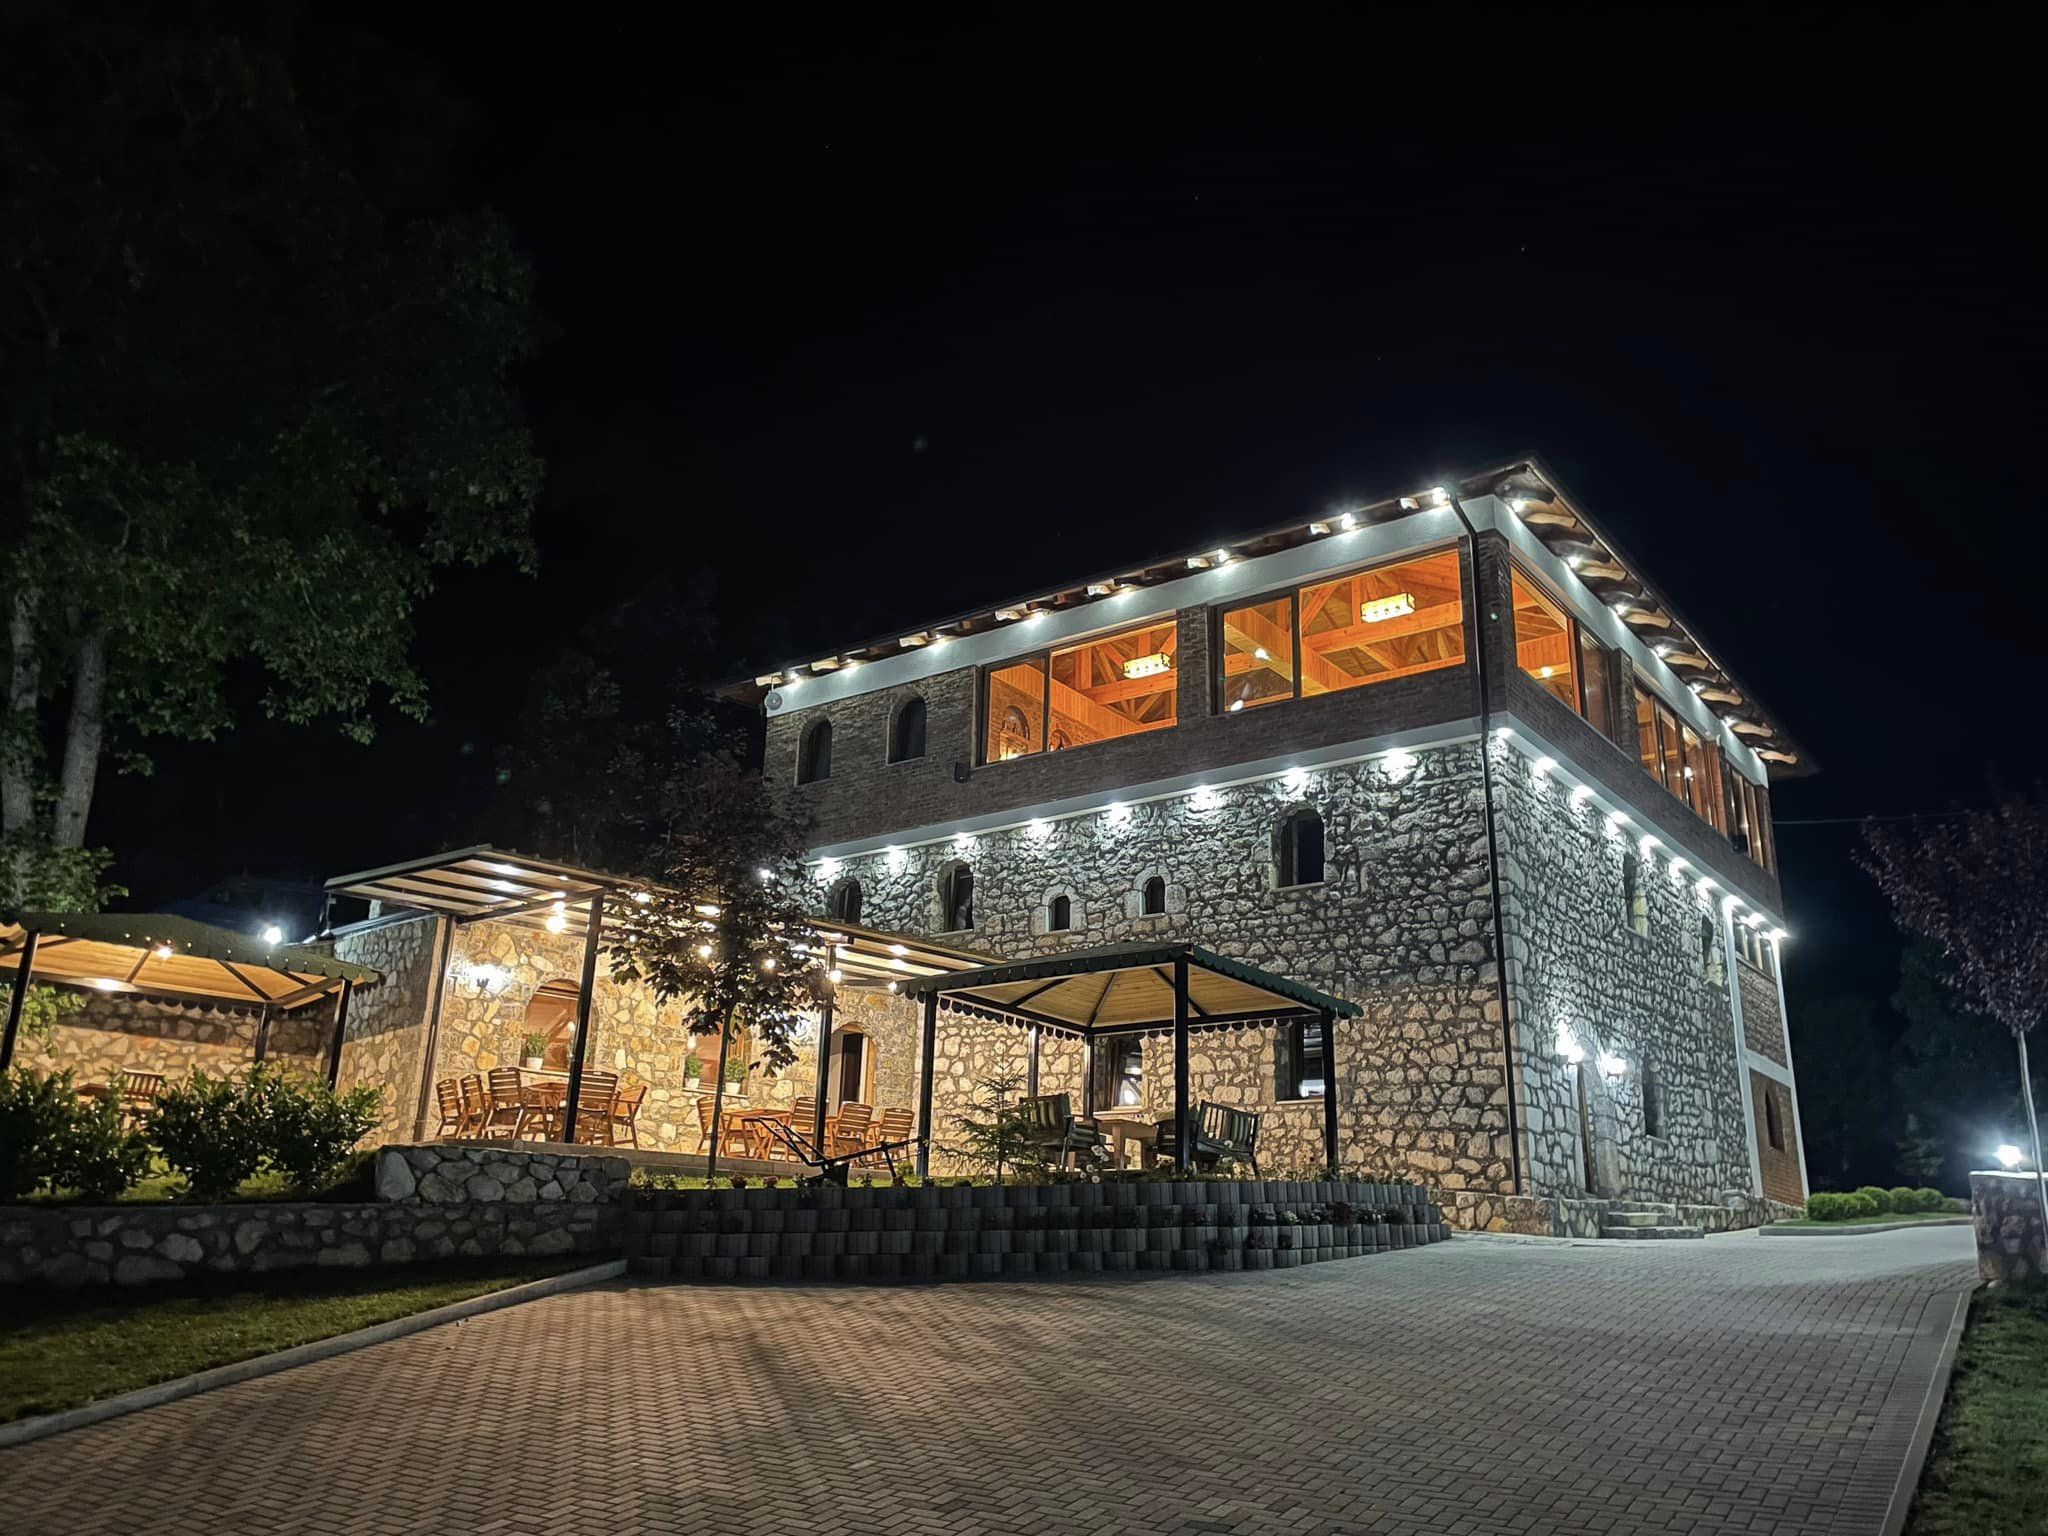 “Kalaja” – restauranti dhe moteli me traditë në Lipë të Pejës